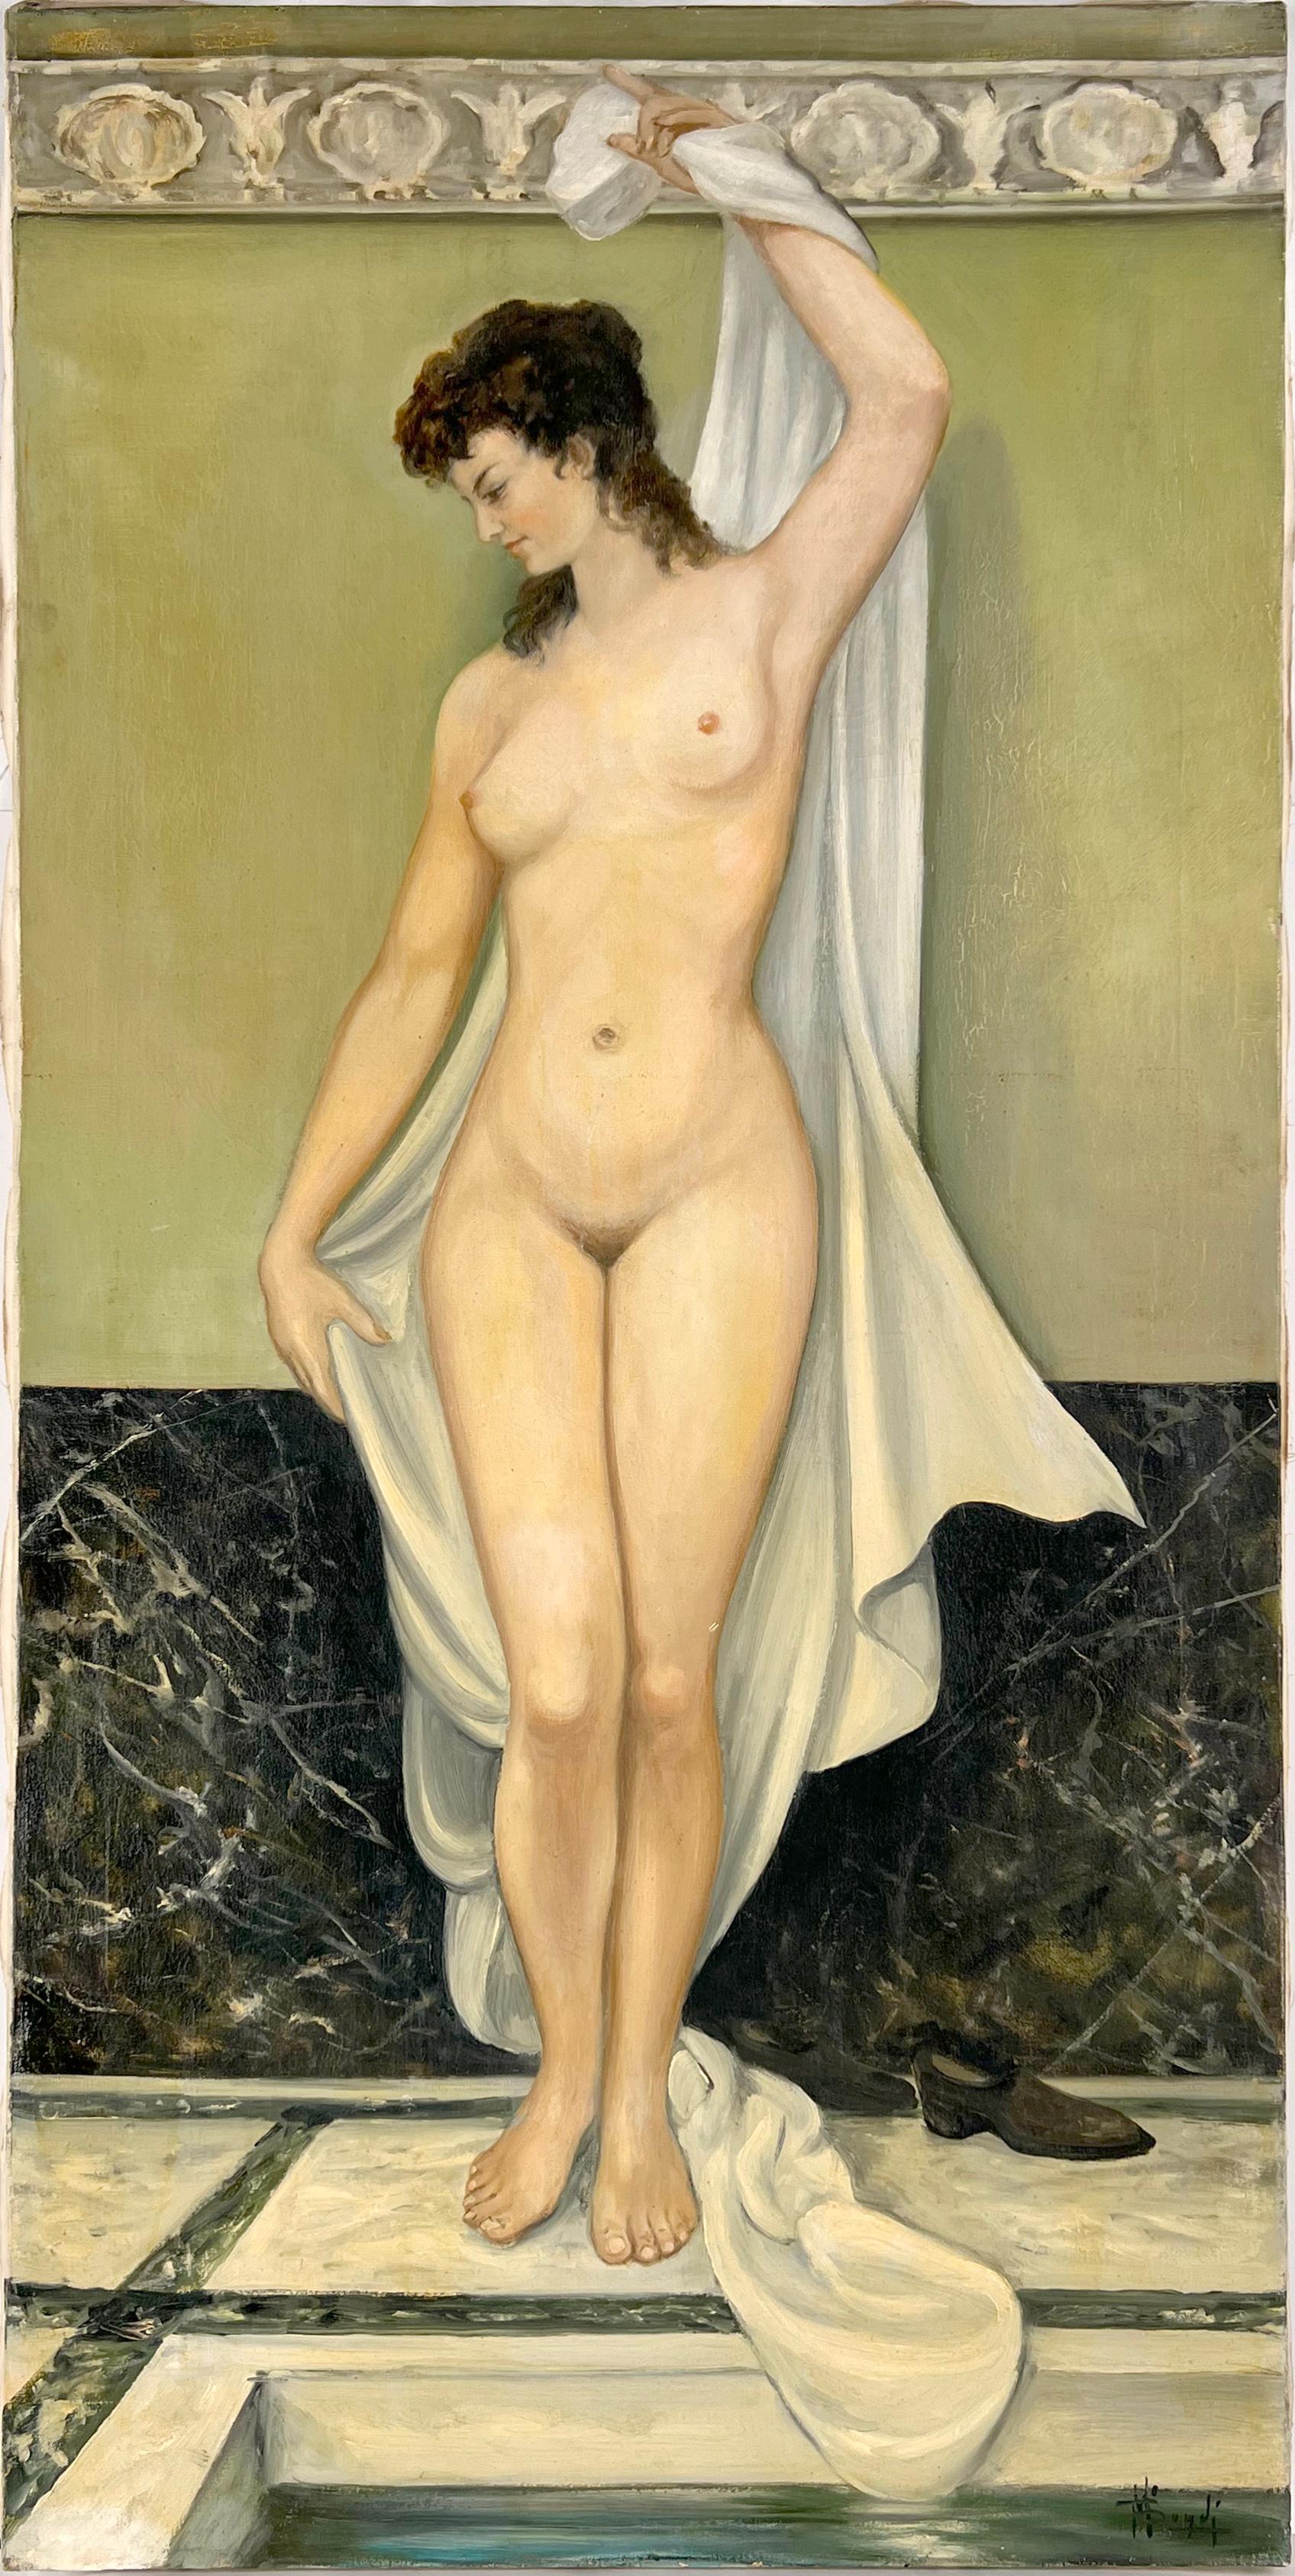 M Bondi Nude Painting – Akt in den römischen Baths, Öl auf Leinen, 1967